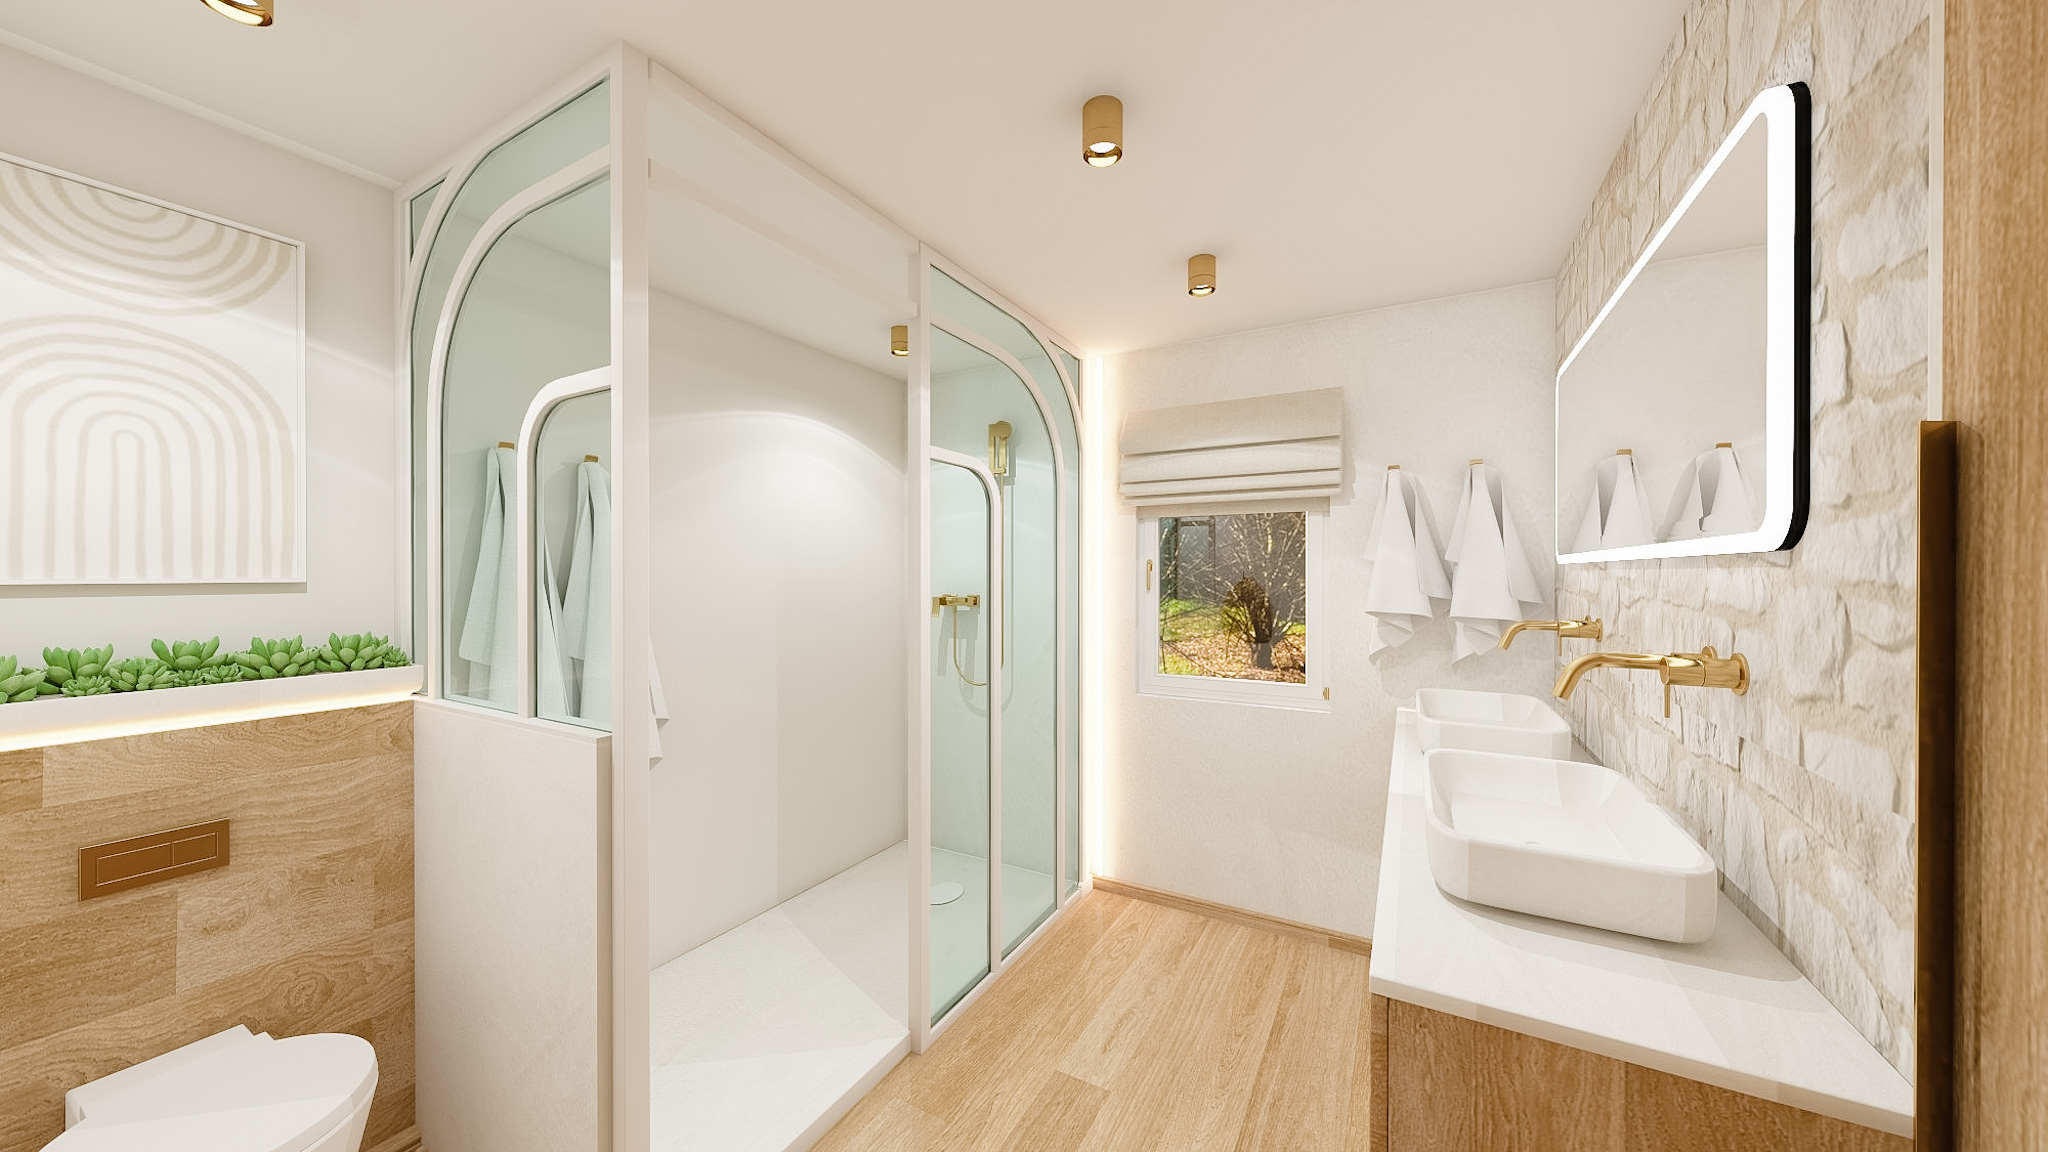 Salle de bain chaleureuse, teinte claire et lumineuse, béton ciré, verrière, mur en pierre